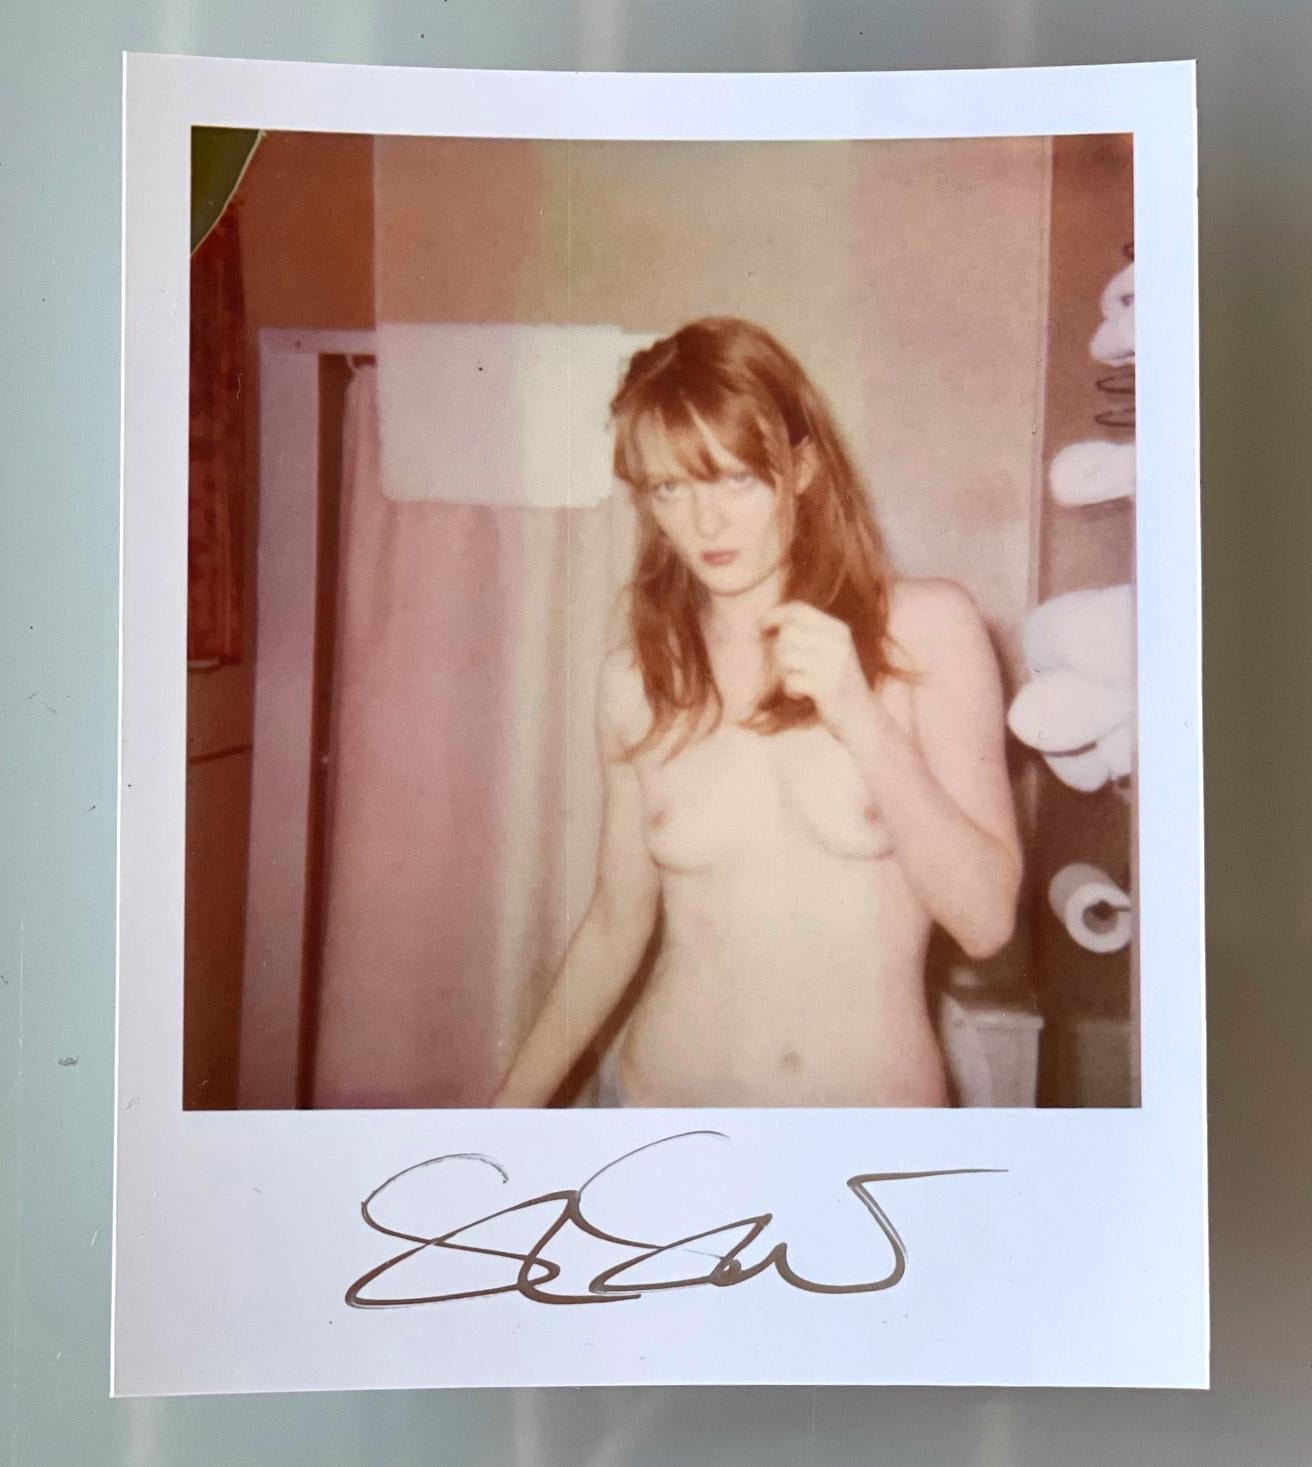 Stefanie Schneiders Mini
Hard Luck Princess (Bis dass der Tod uns scheidet) - 2005

vorne signiert, nicht montiert. 
Digitale Farbfotografien auf der Grundlage eines Polaroids. 

Offene Editionen in Polaroidgröße 1999-2013
10.7 x 8,8cm (Bild